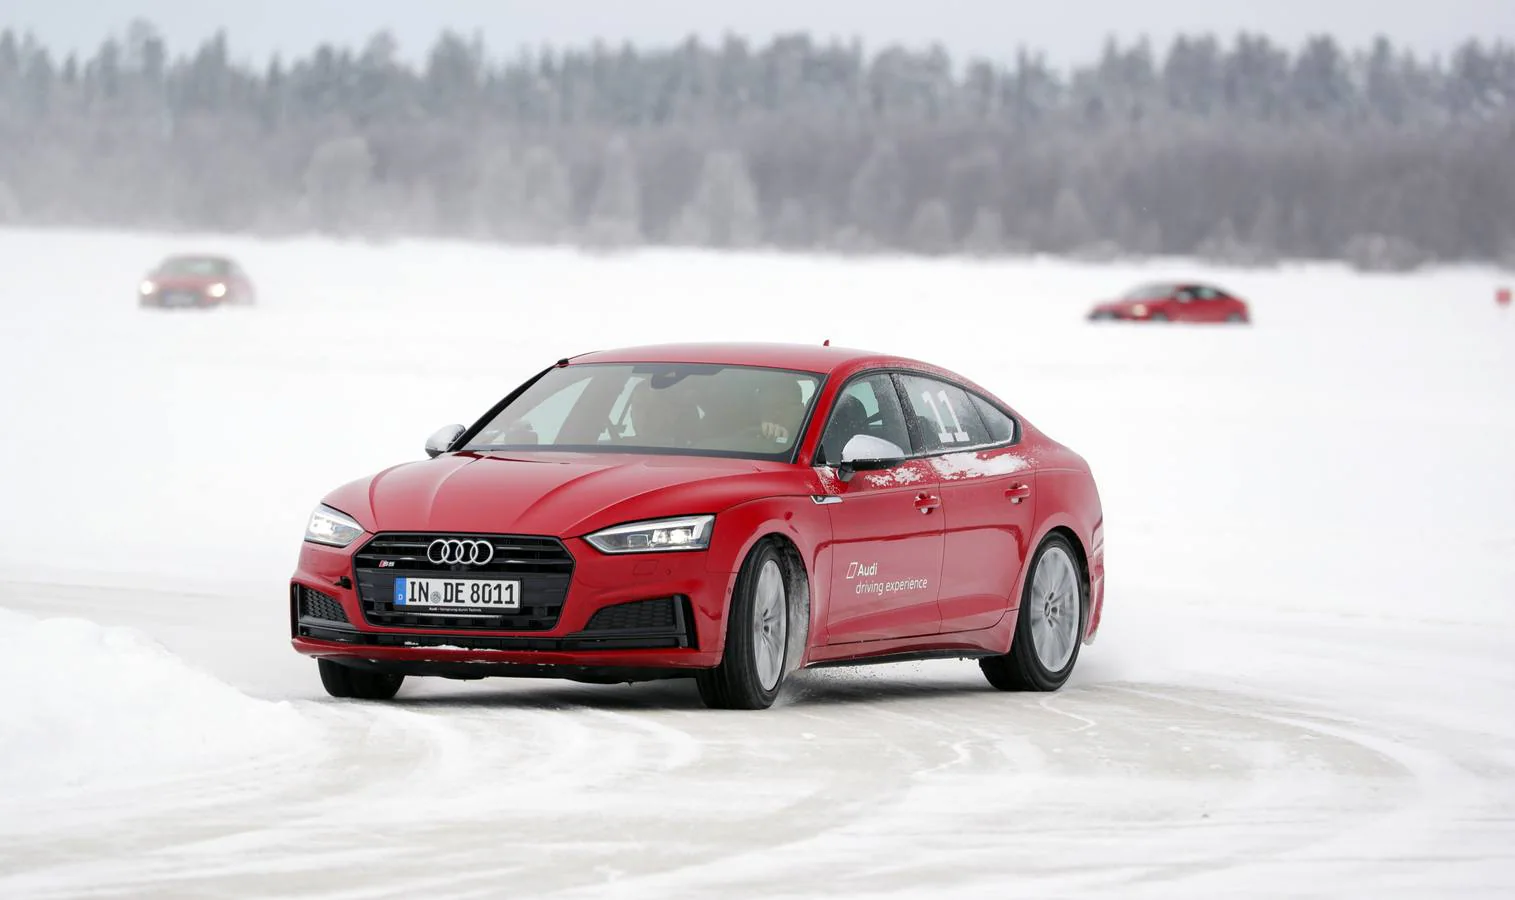 Uno de los mejores cursos de conducción que se pueden realizar en invierno es el 'Audi ice experience'. Una experiencia recomendable que nos ayuda a afrontar con seguridad las peores condiciones de adherencia en carretera.